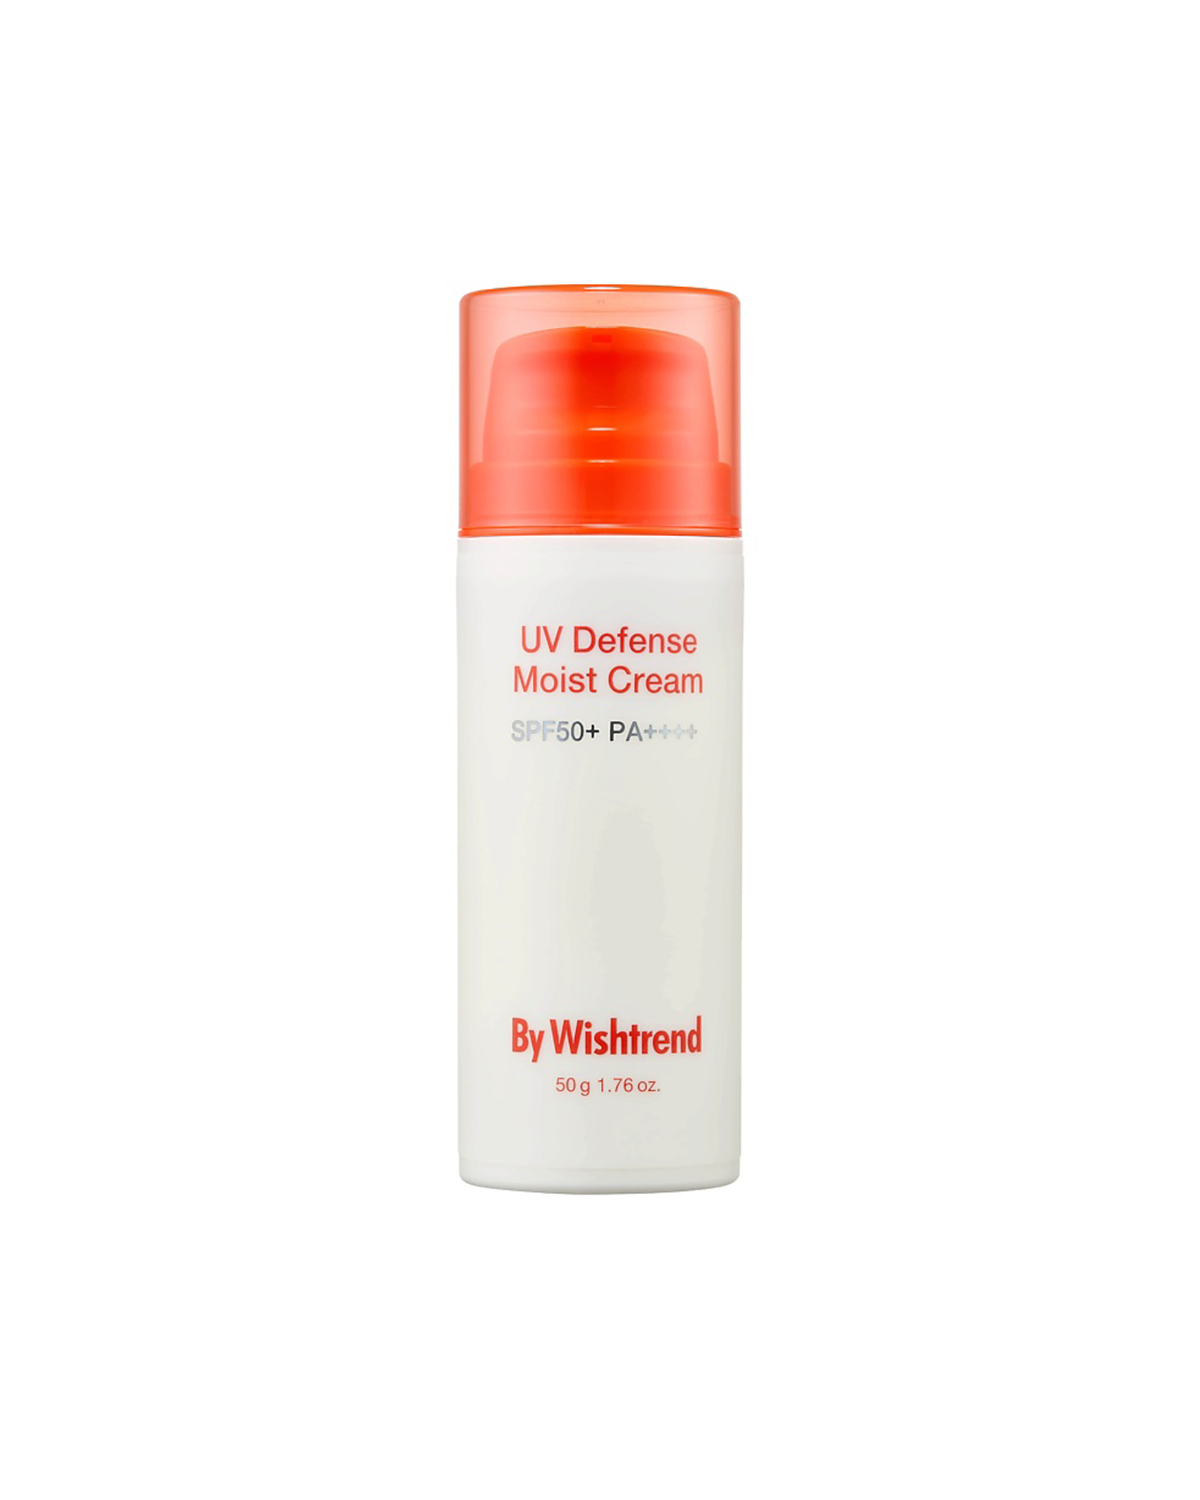 BY WISHTREND Wishtrend UV Defense Moist Cream 50g